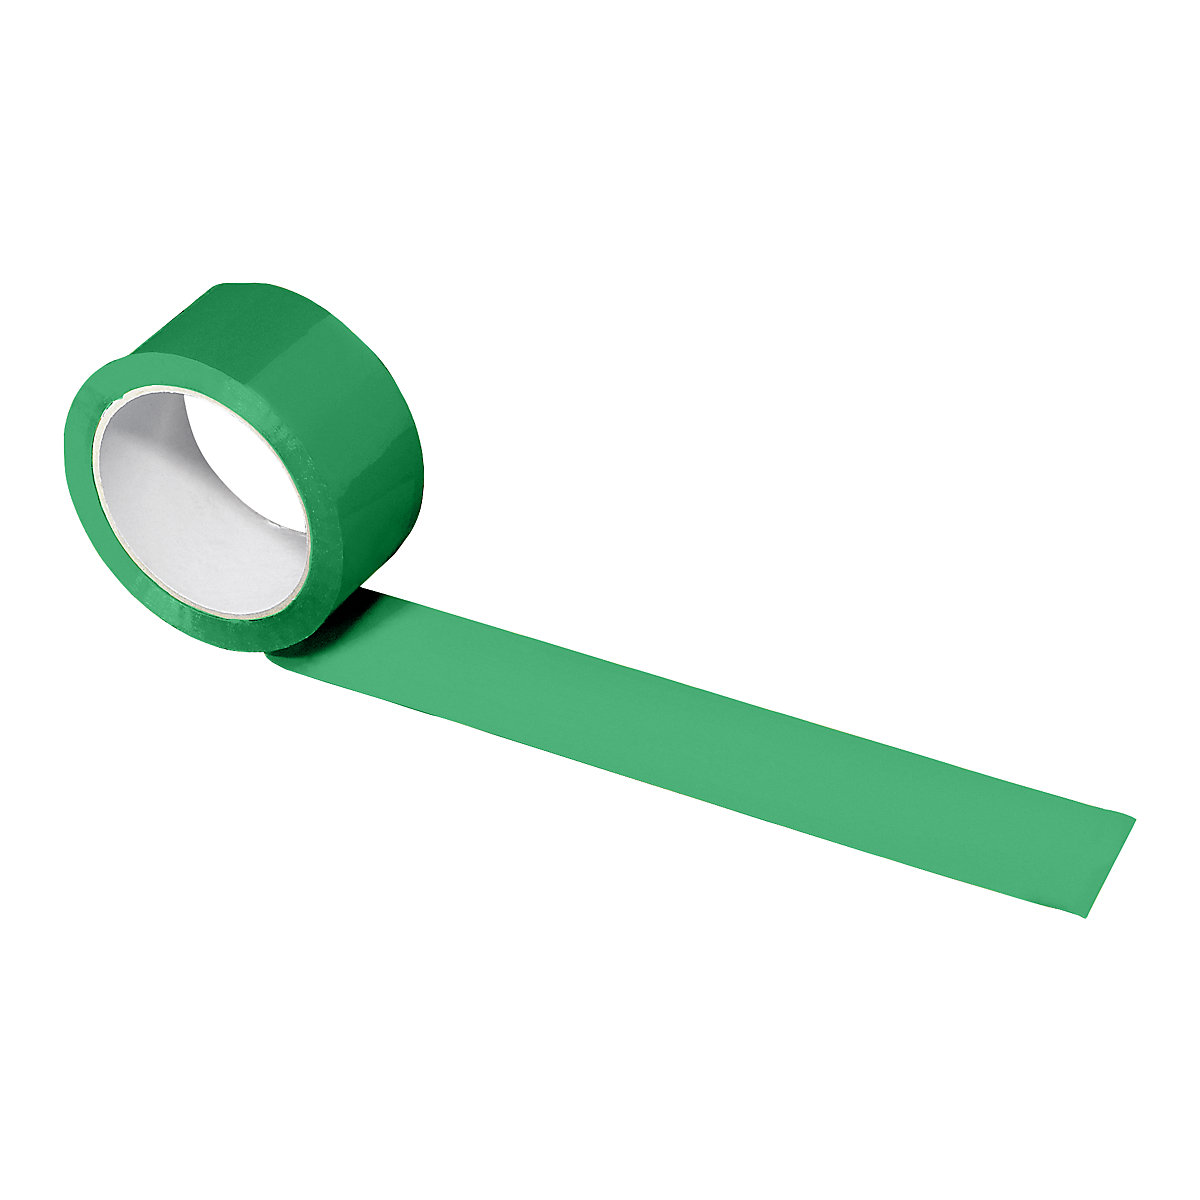 PP traka za pakiranje, u različitim bojama, pak. 216 rola, u zelenoj boji, širina trake 50 mm